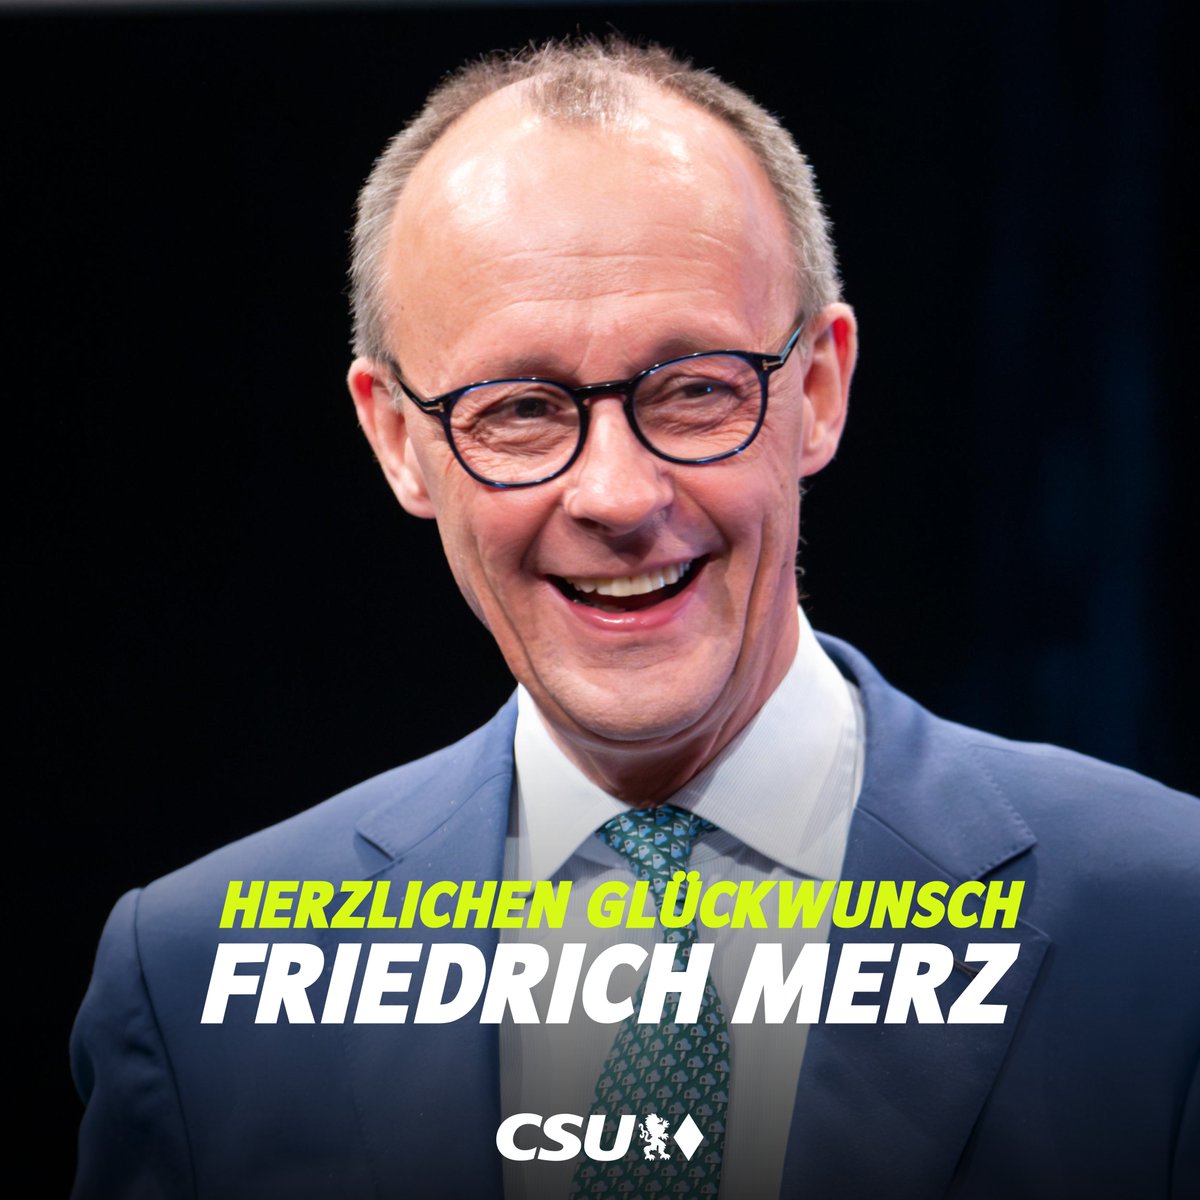 Wir gratulieren @_FriedrichMerz ganz herzlich zur Wiederwahl als Vorsitzender der @CDU.